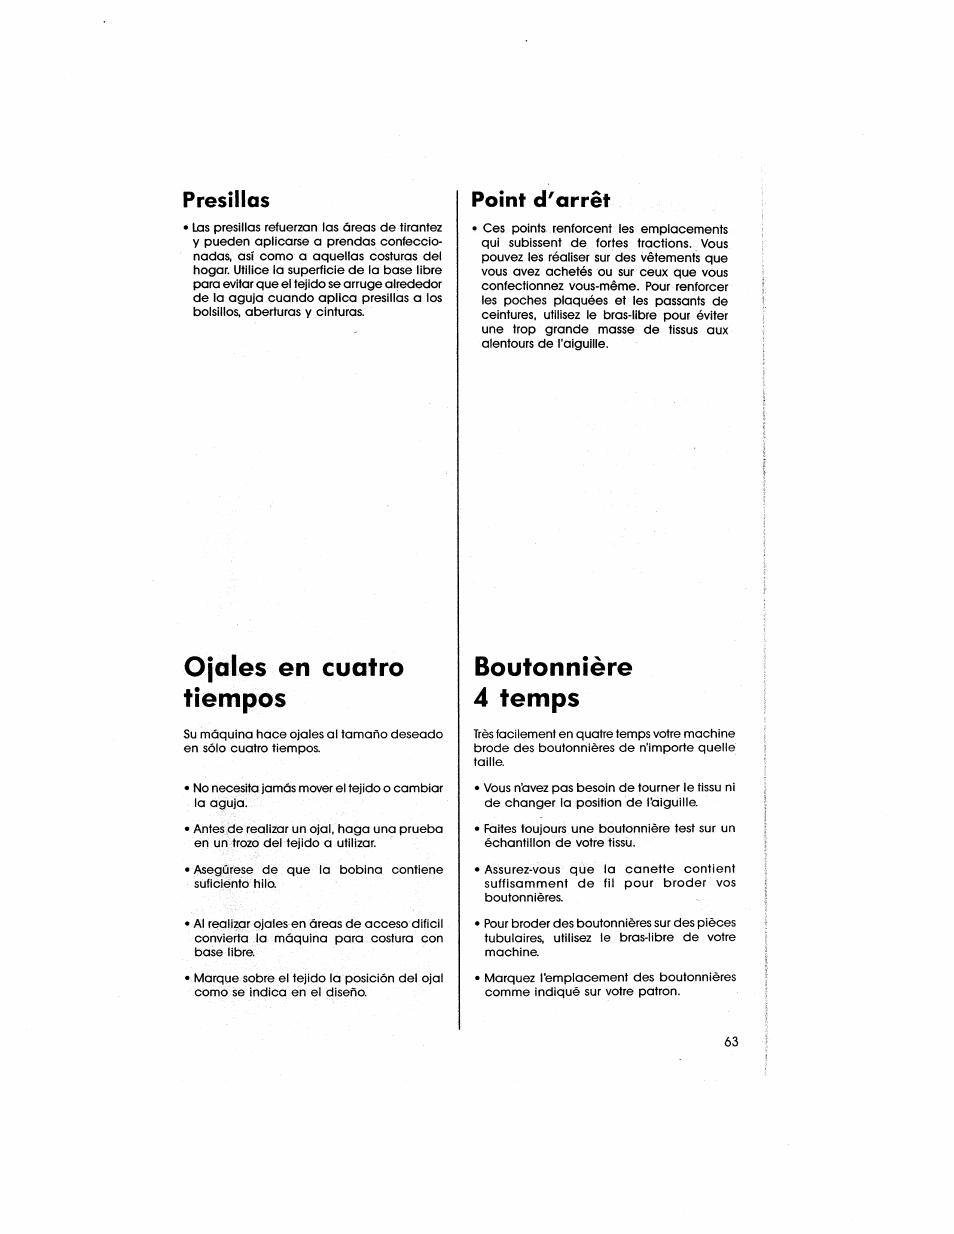 Ojales en cuatro tiempos, Boutonnière 4 temps, Presillas | Point d'arrêt | SINGER 5805 User Manual | Page 65 / 88